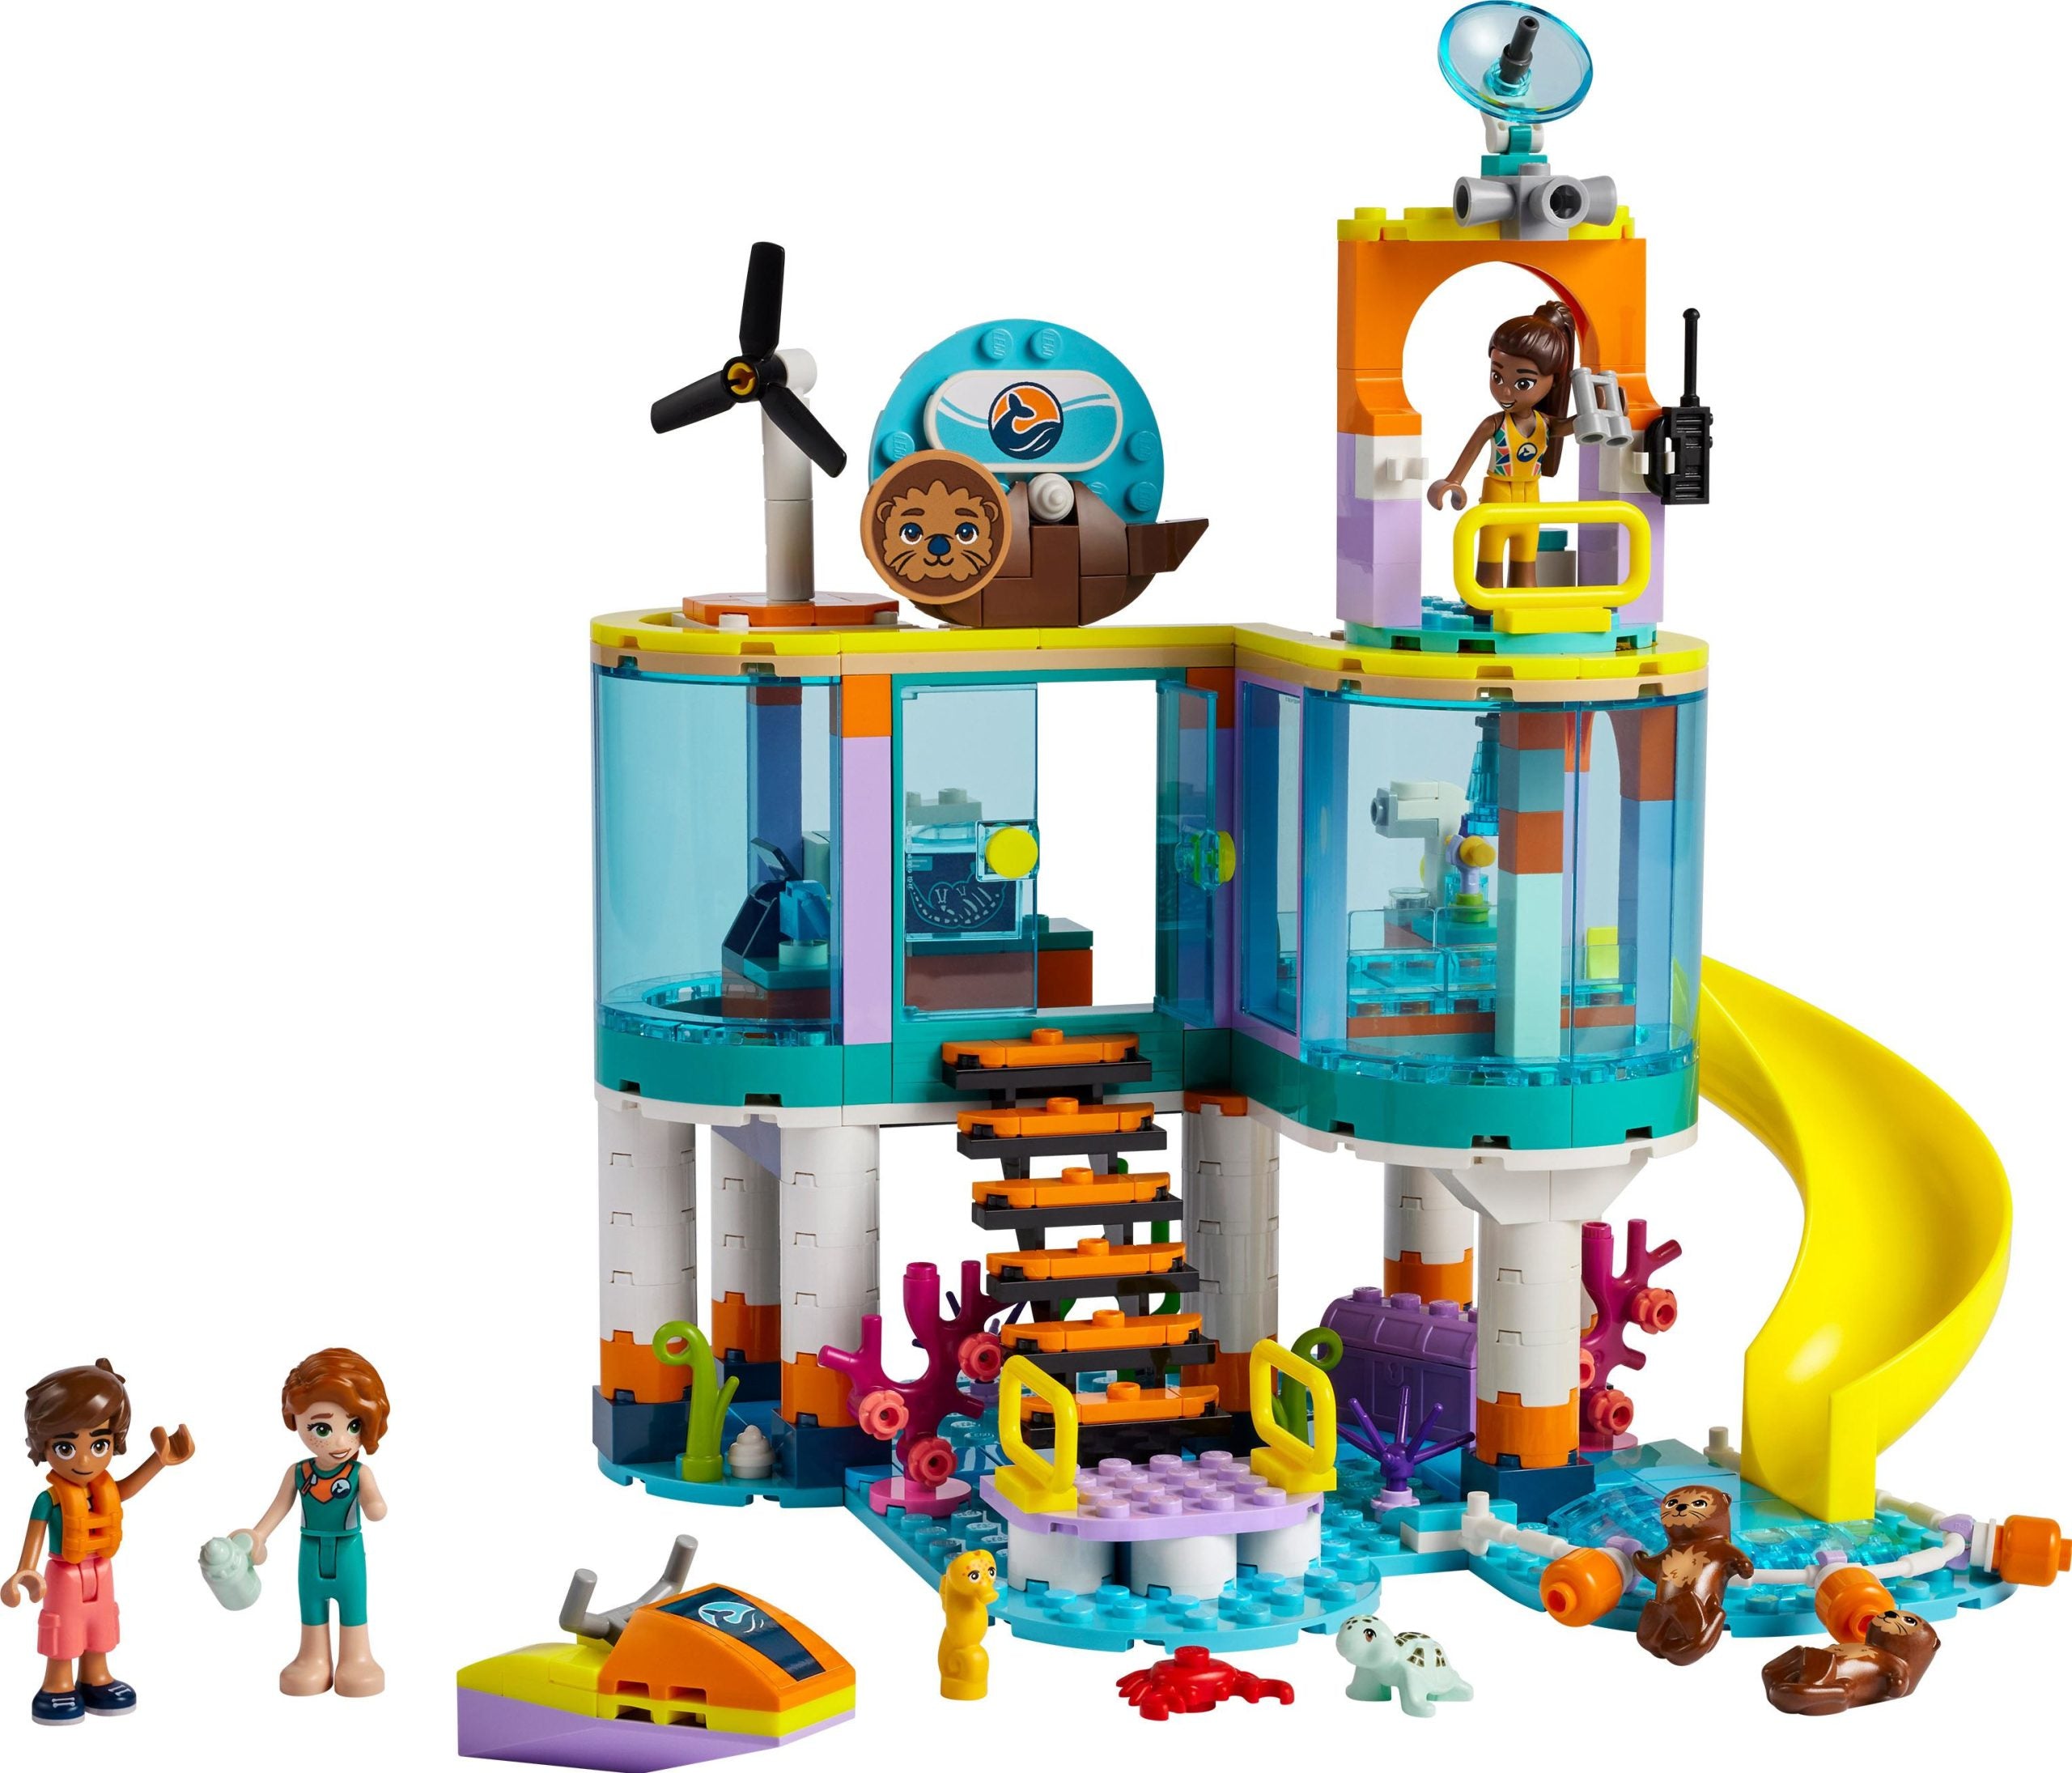 41736 - LEGO Friends - Centro di soccorso marino